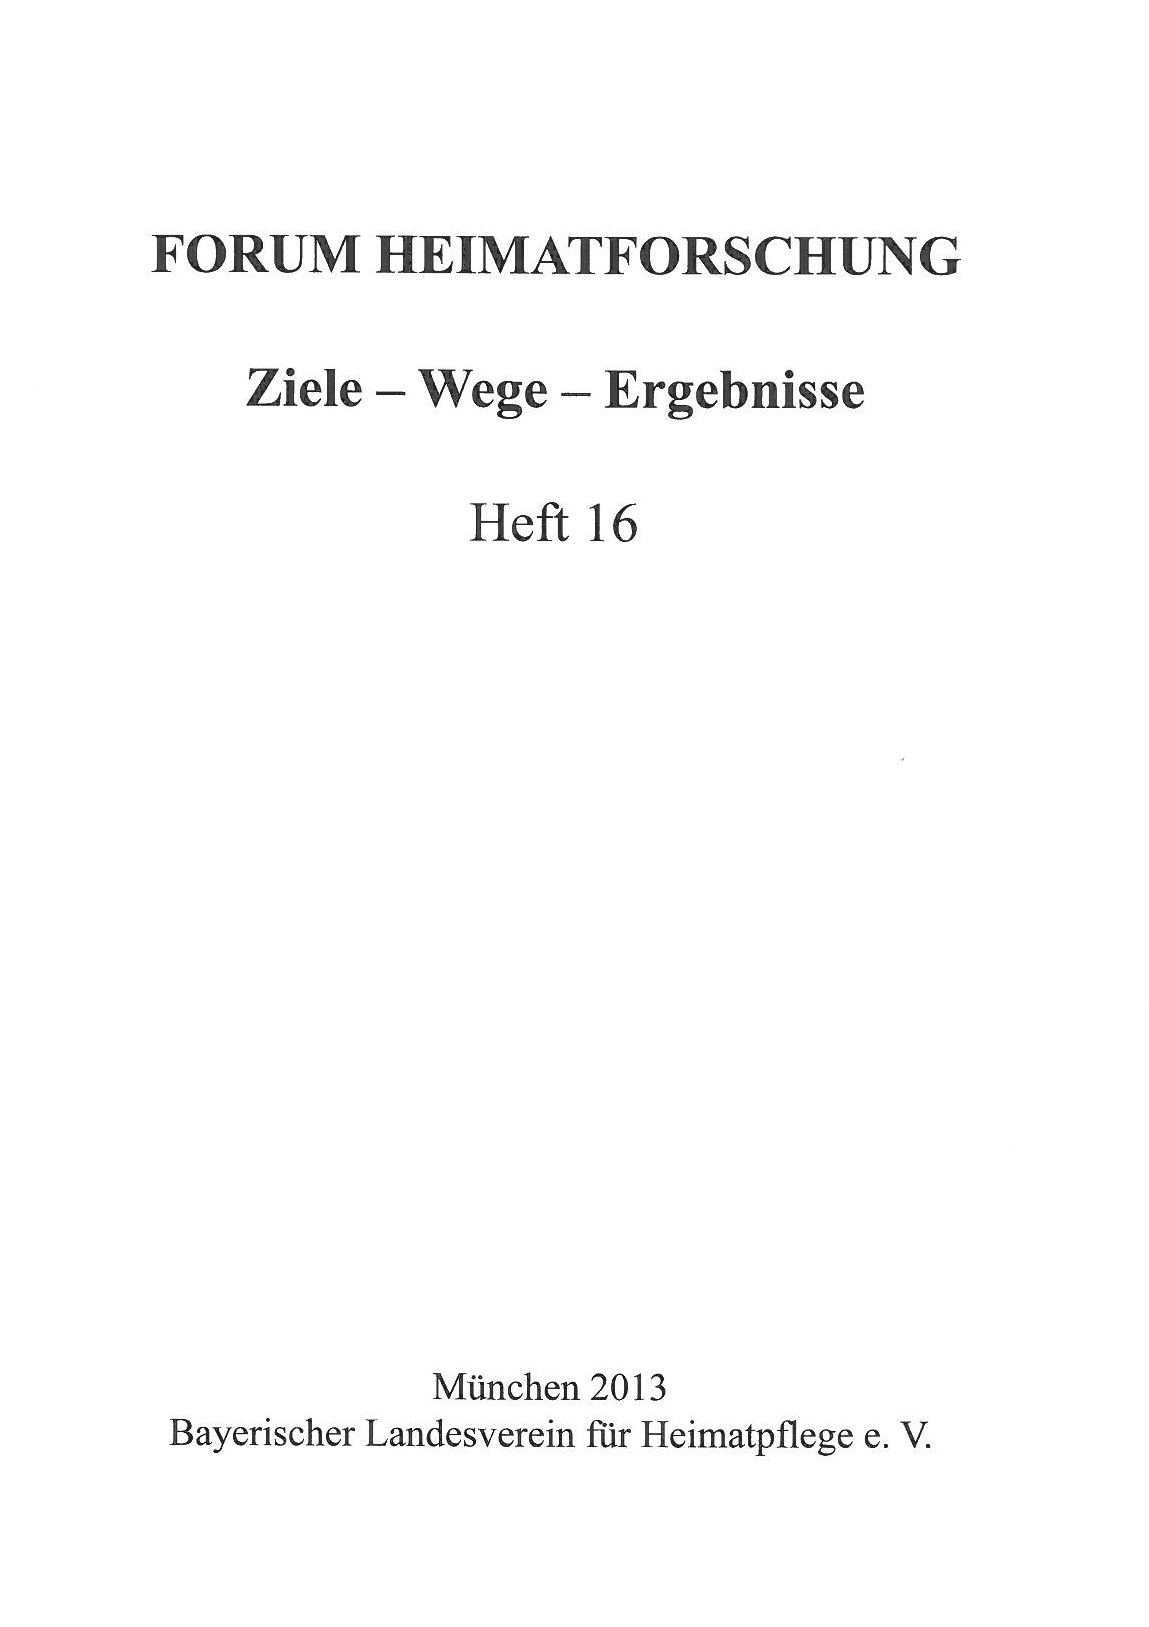 Forum Heimatforschung 16